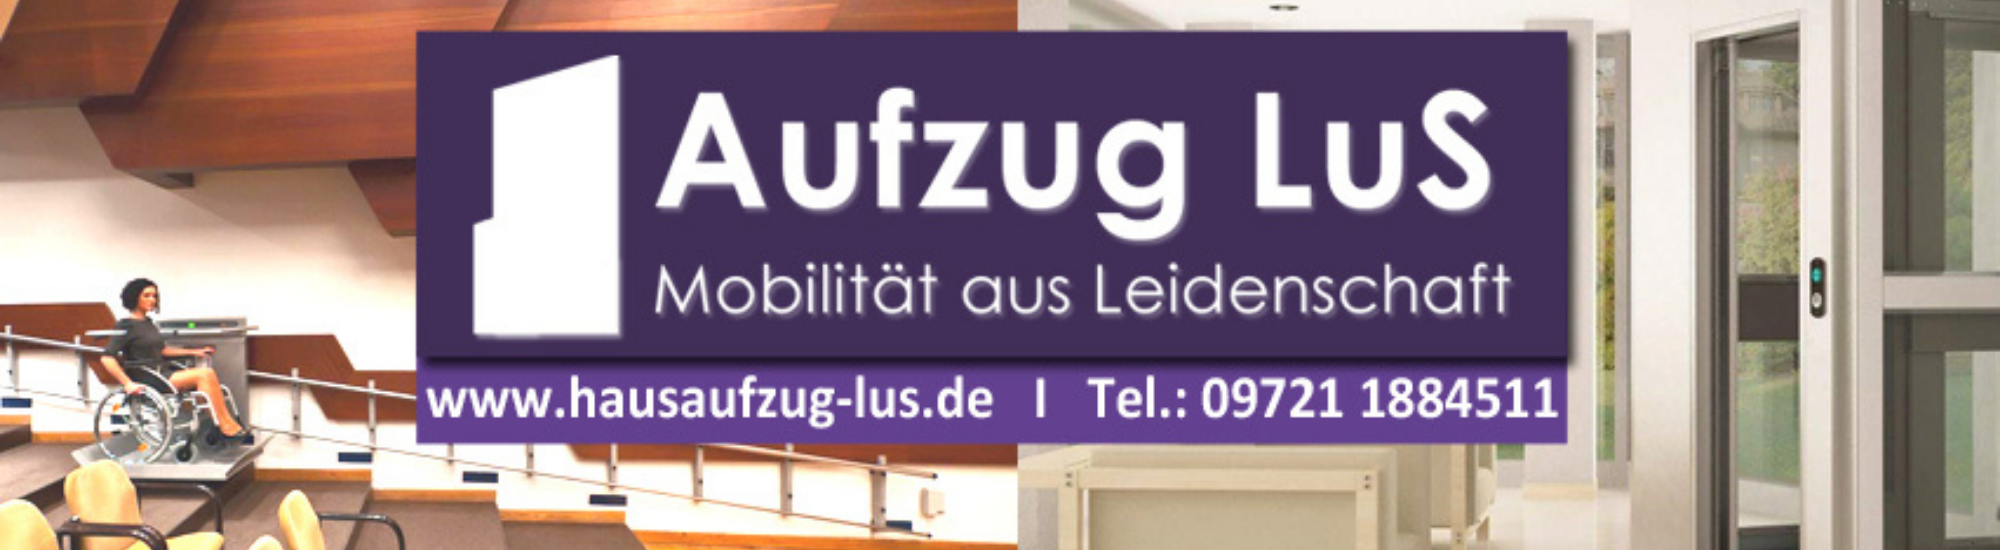 Aufzug LuS GmbH Spezialist für barrierefreie Lift - Systeme